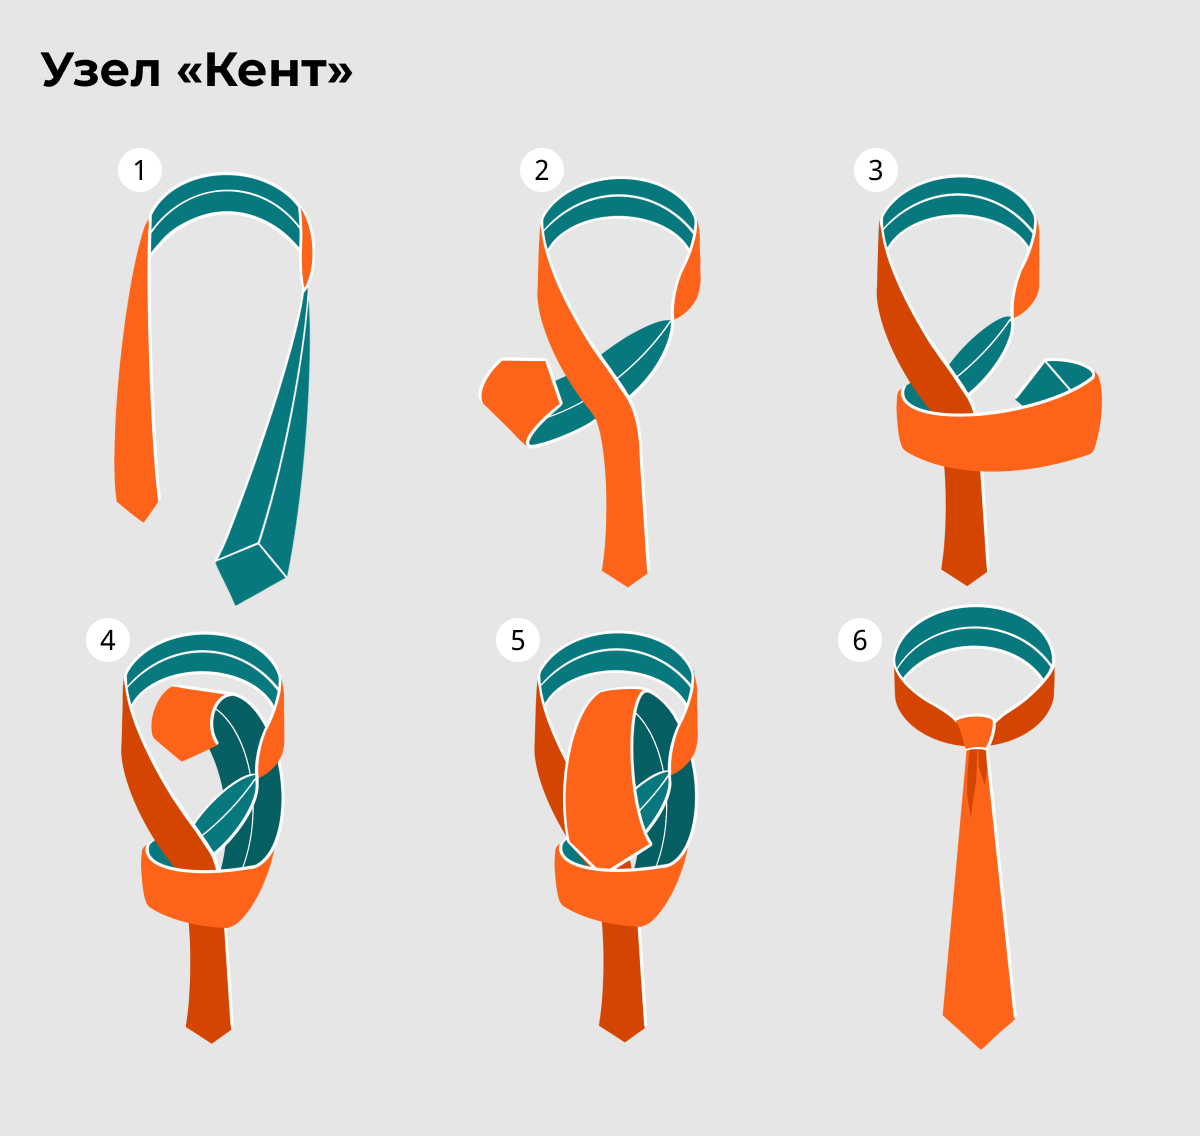 Пионерский, скаутский галстук и как его завязать: как выглядит, схемы, размеры, фото